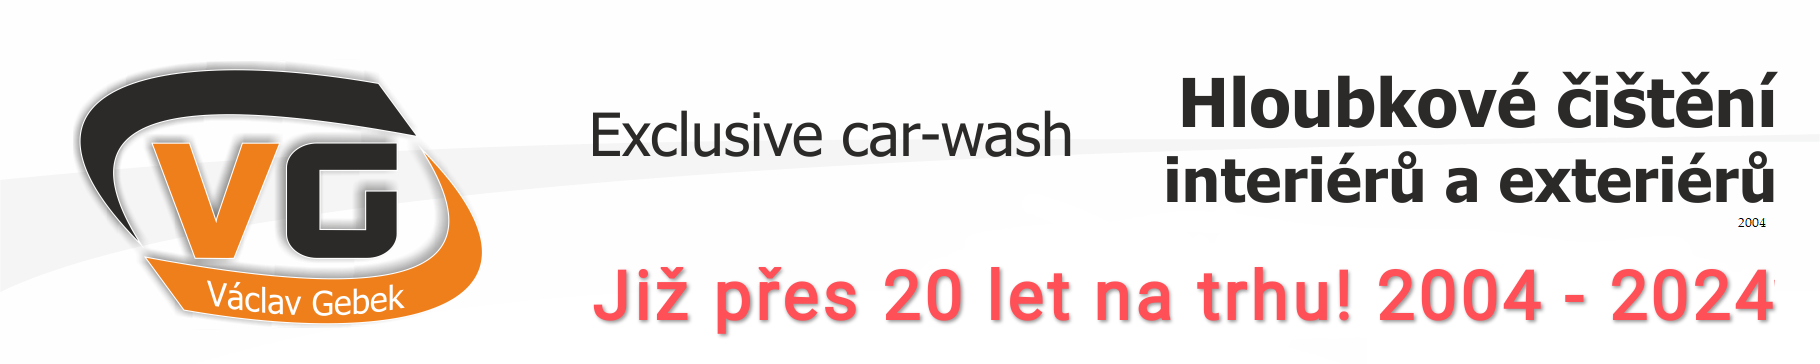 CAR-WASH exclusive VG